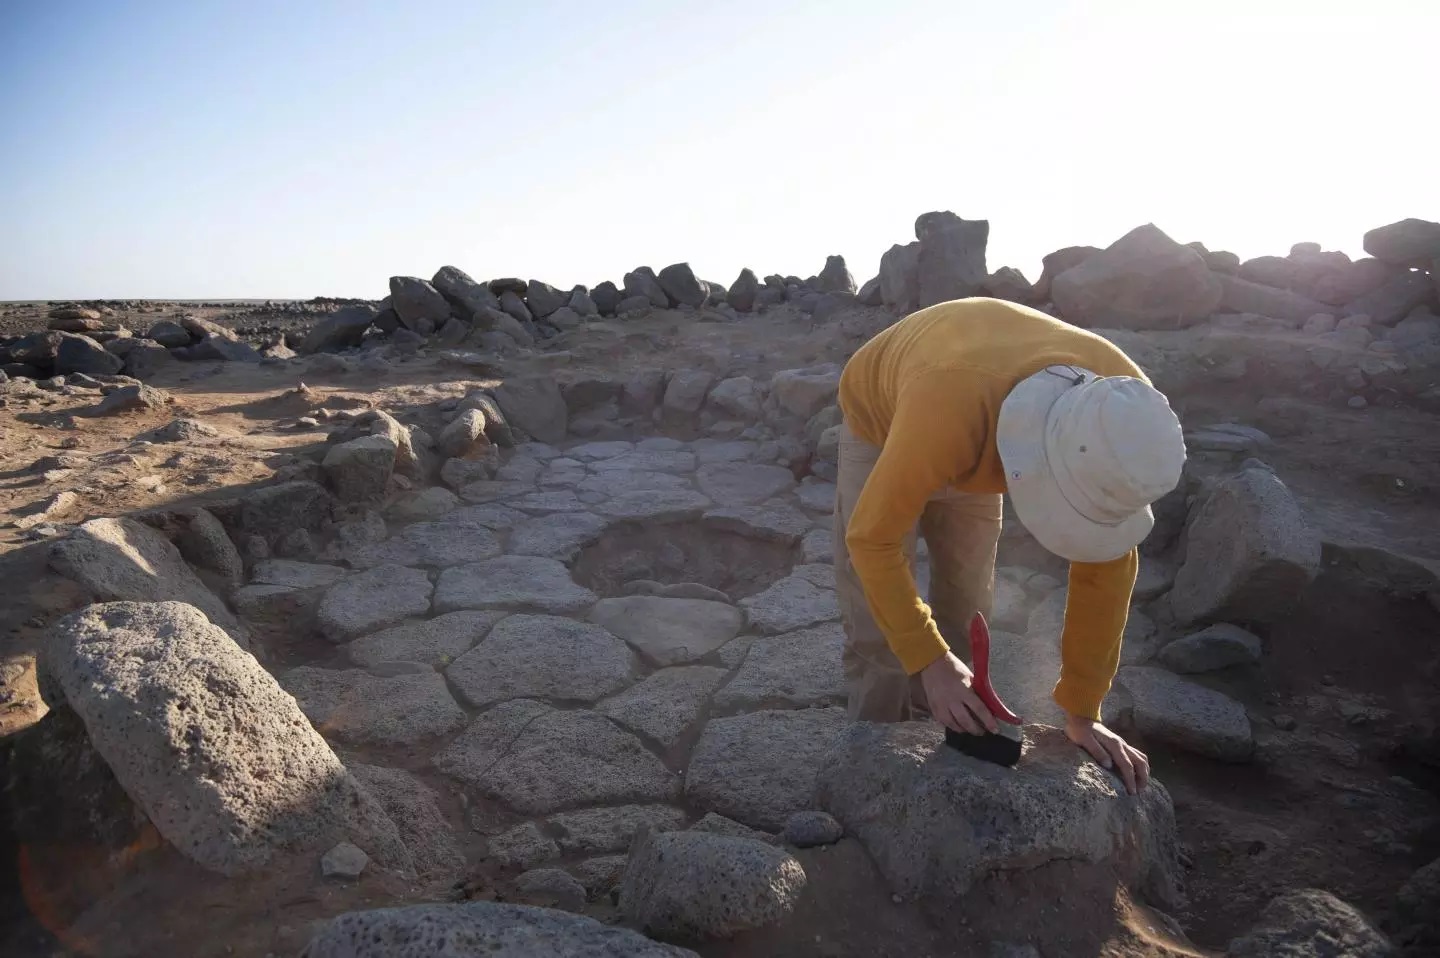 يقع الموقع الأثري الذي تم اكتشاف قطعة الخبز فيه، شمال شرقي الأردن (نيوزويك)